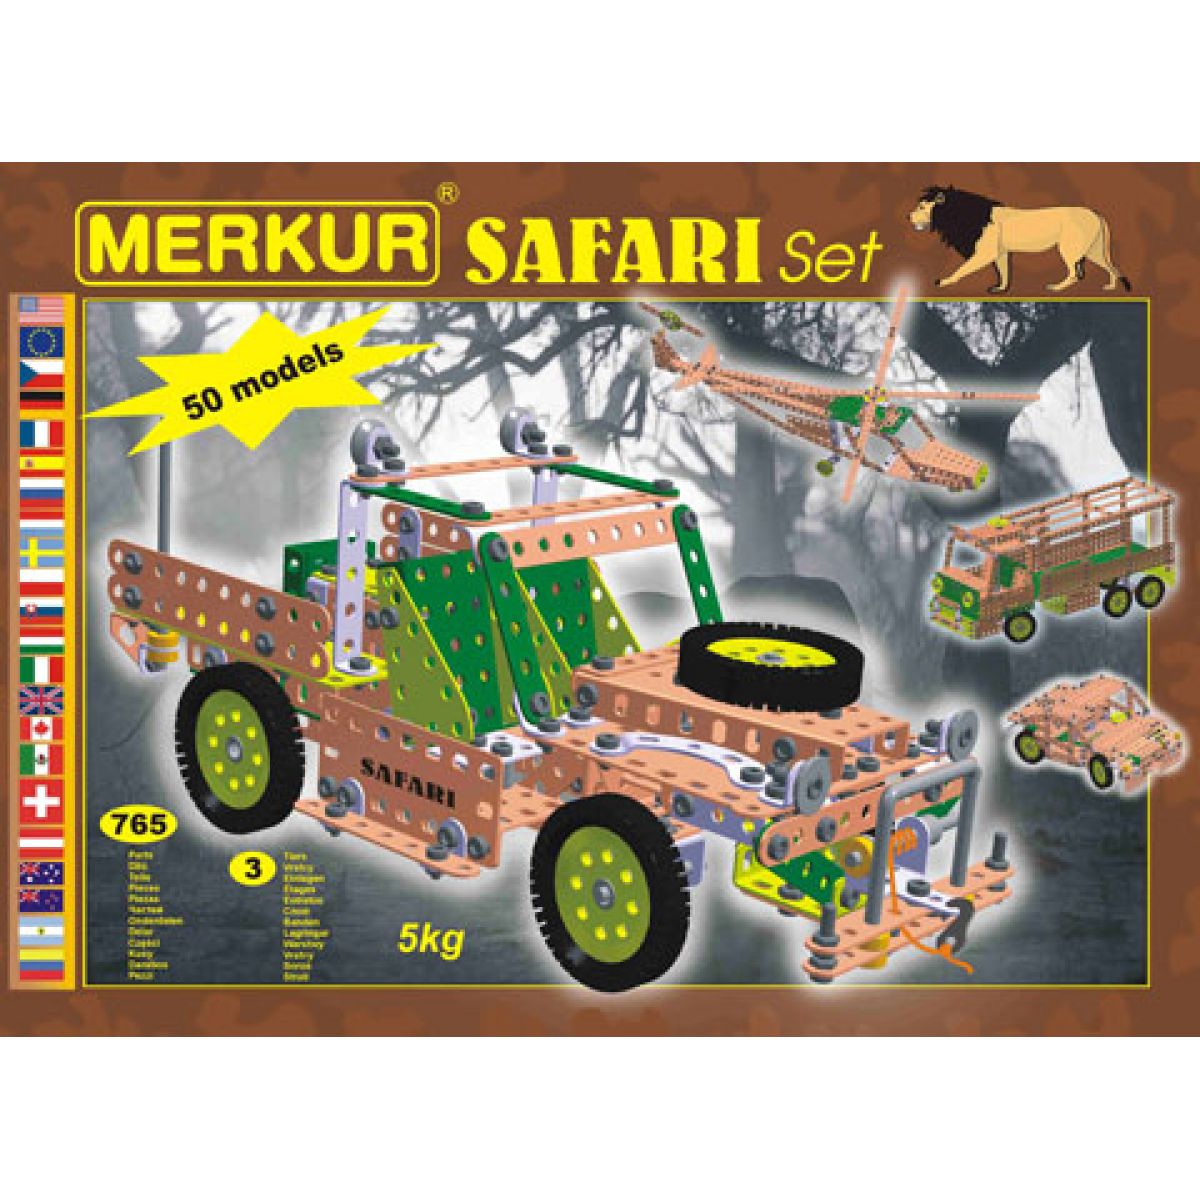 Merkur SafariI Set